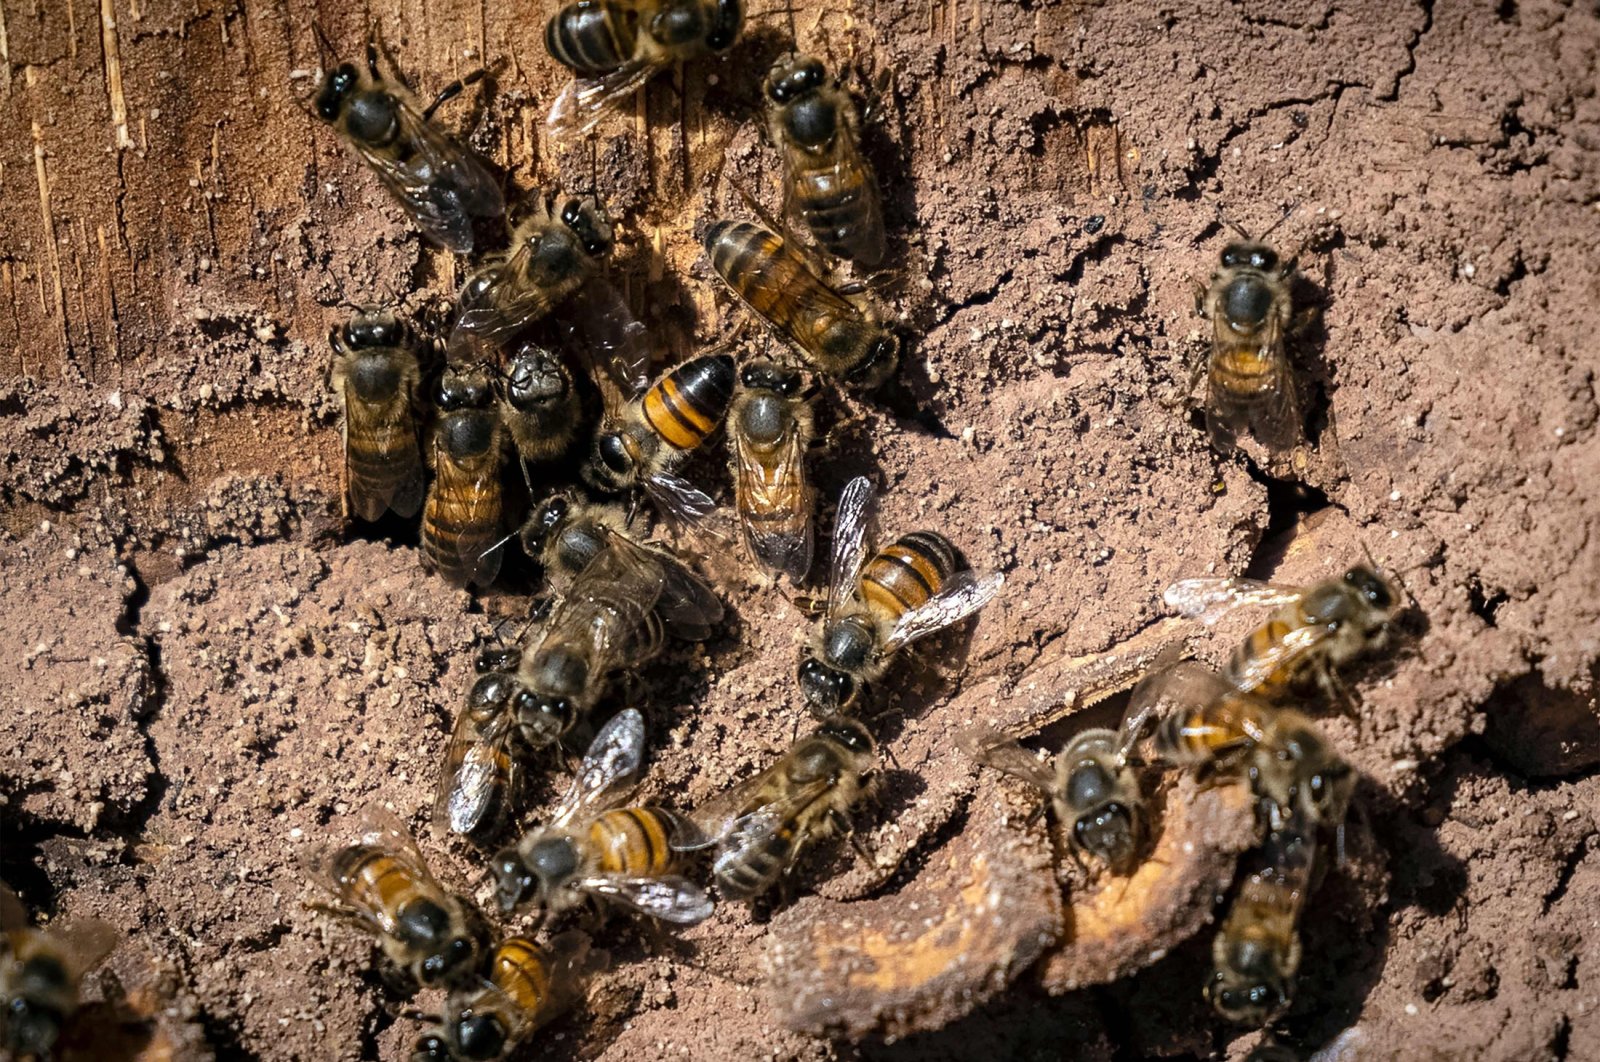 Iklim menyengat semua: Lebah Maroko menghadapi bencana di tengah kekeringan